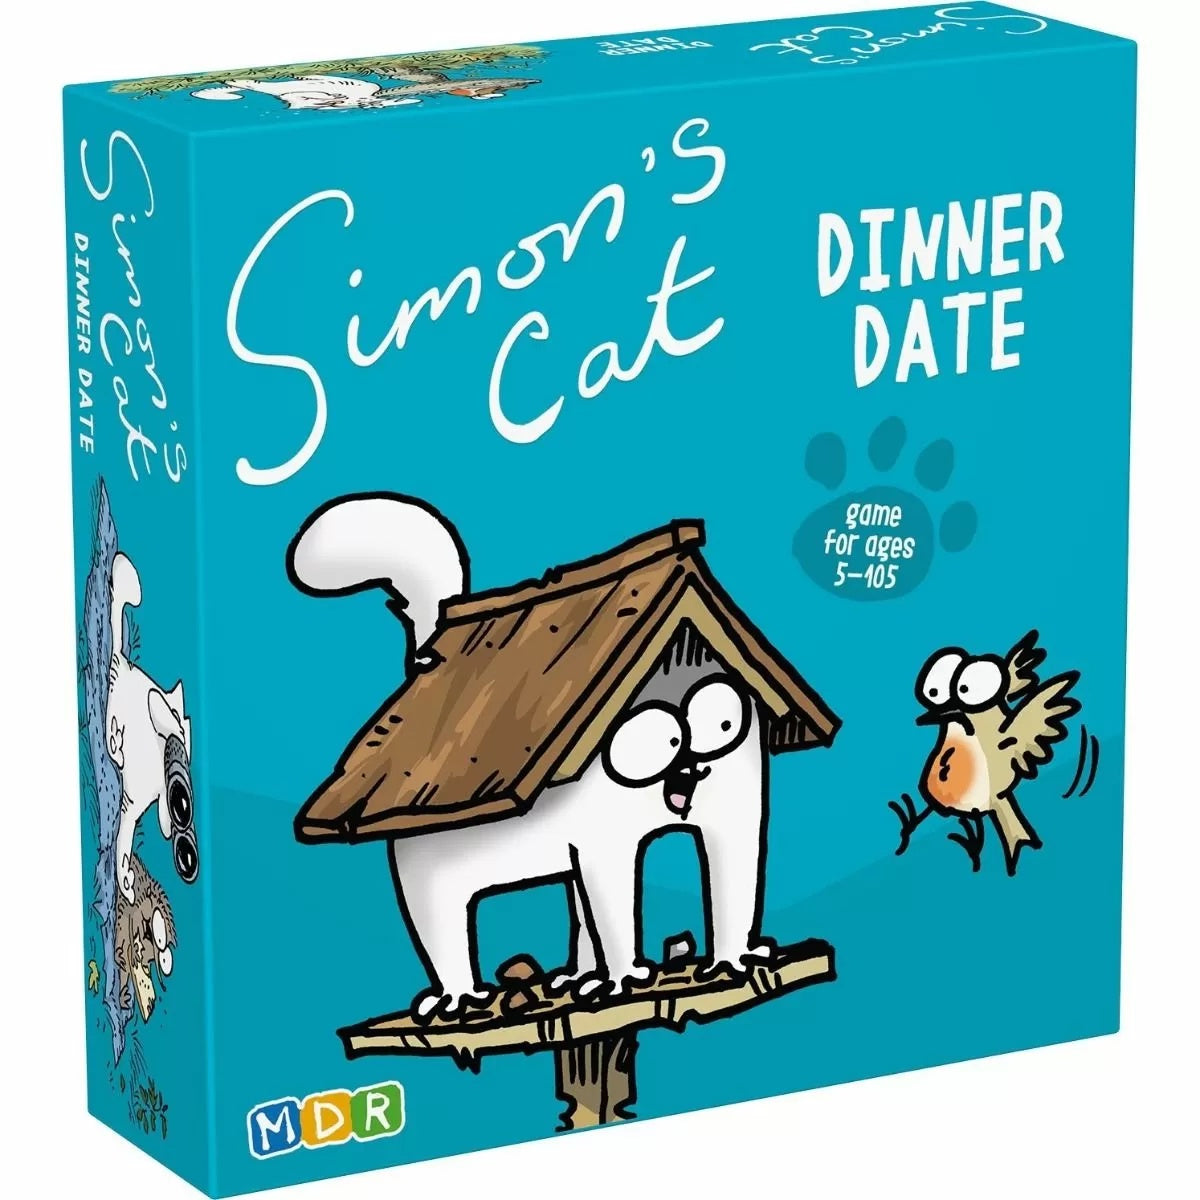 Simons Cat - Dinner Date